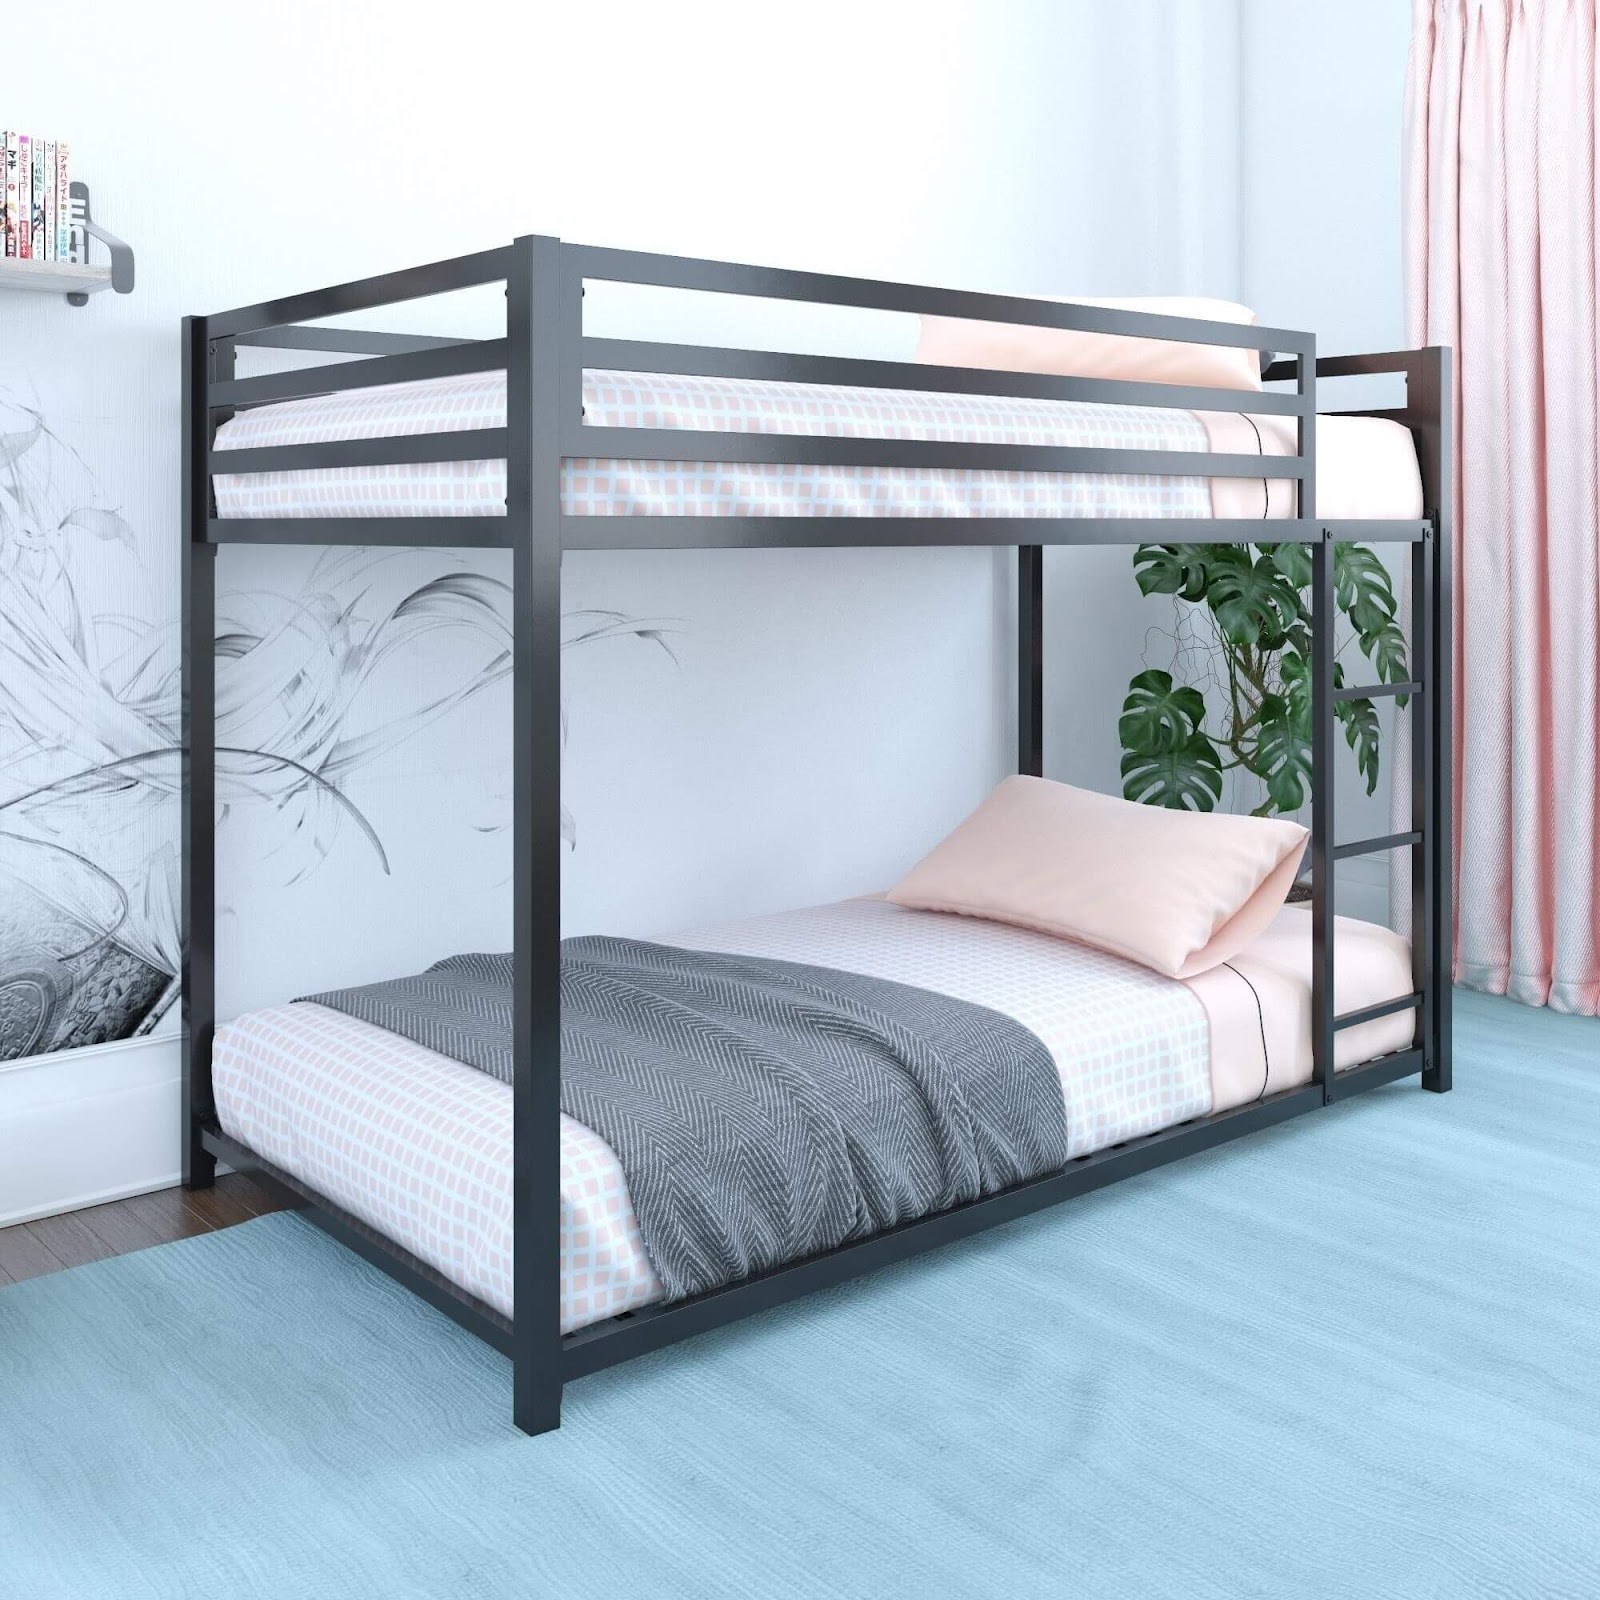 Mẫu giường tầng nào phù hợp với bạn?